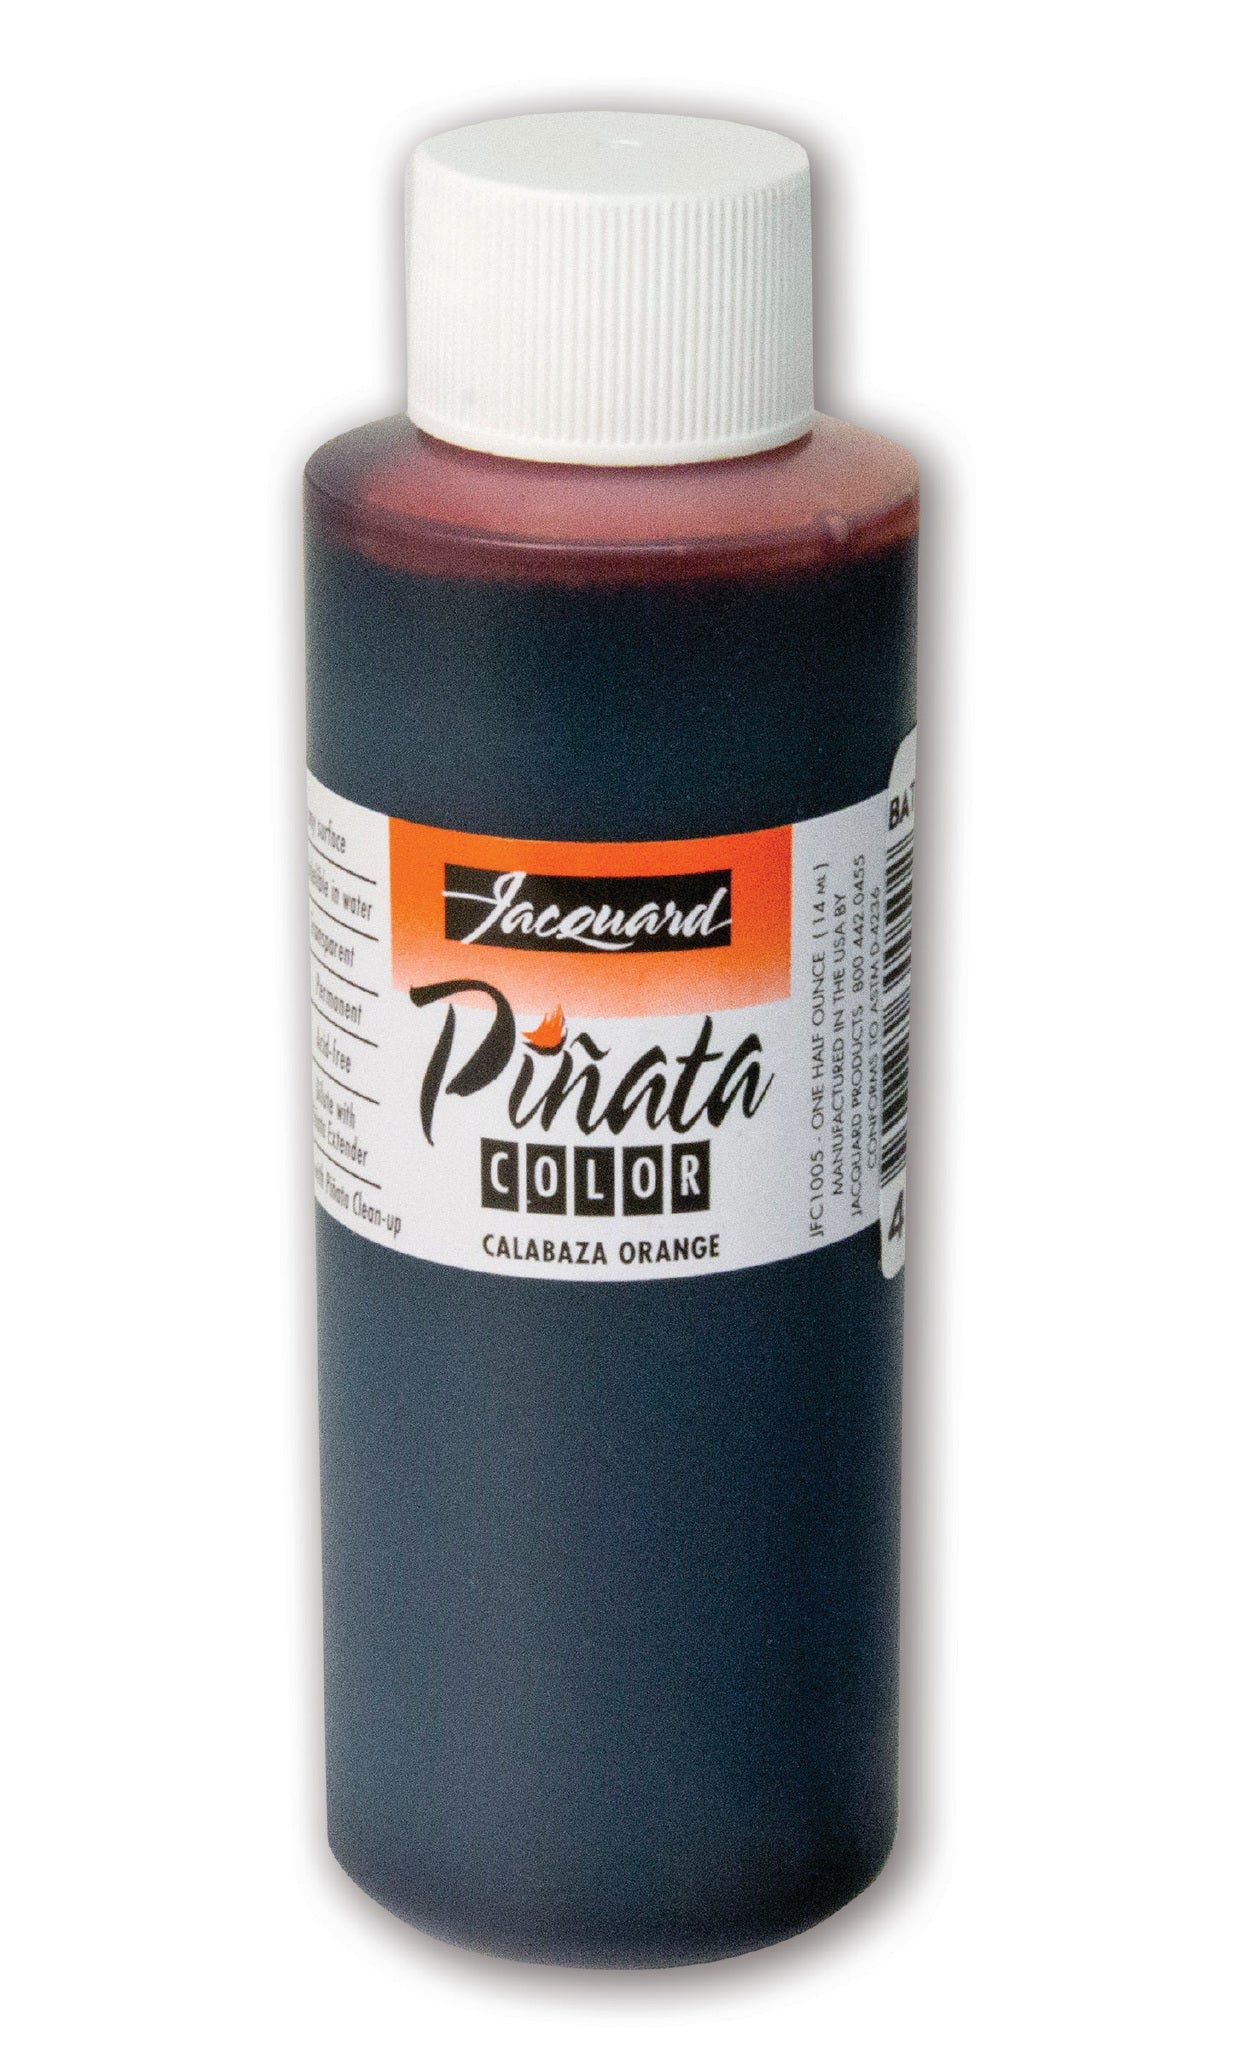 Jacquard Pinata Ink 120ml Calabaza Orange - theartshop.com.au